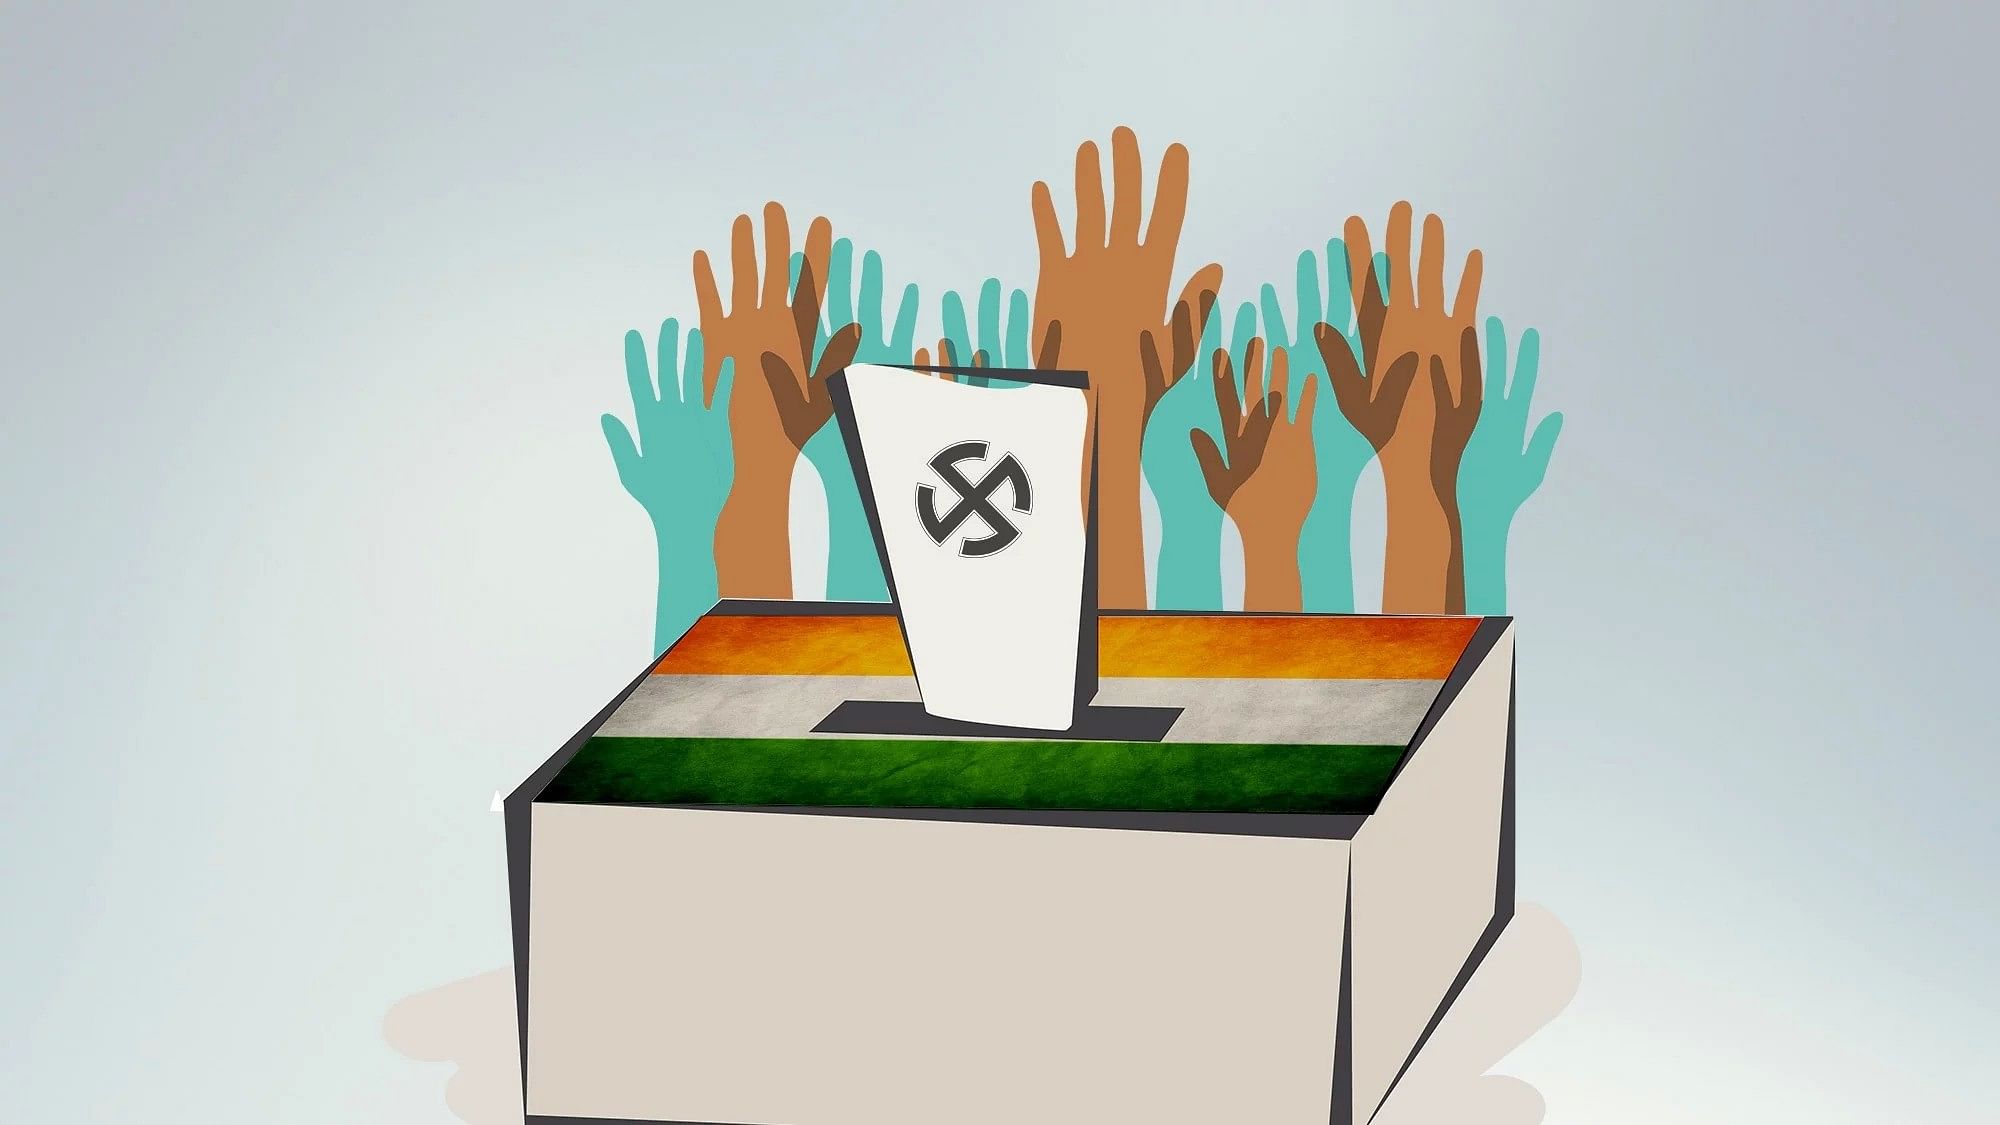 कर्नाटक चुनाव में किसी पार्टी को स्पष्ट बहुमत न मिलने से राज्यपाल के सामने बड़ी चुनौती&nbsp;